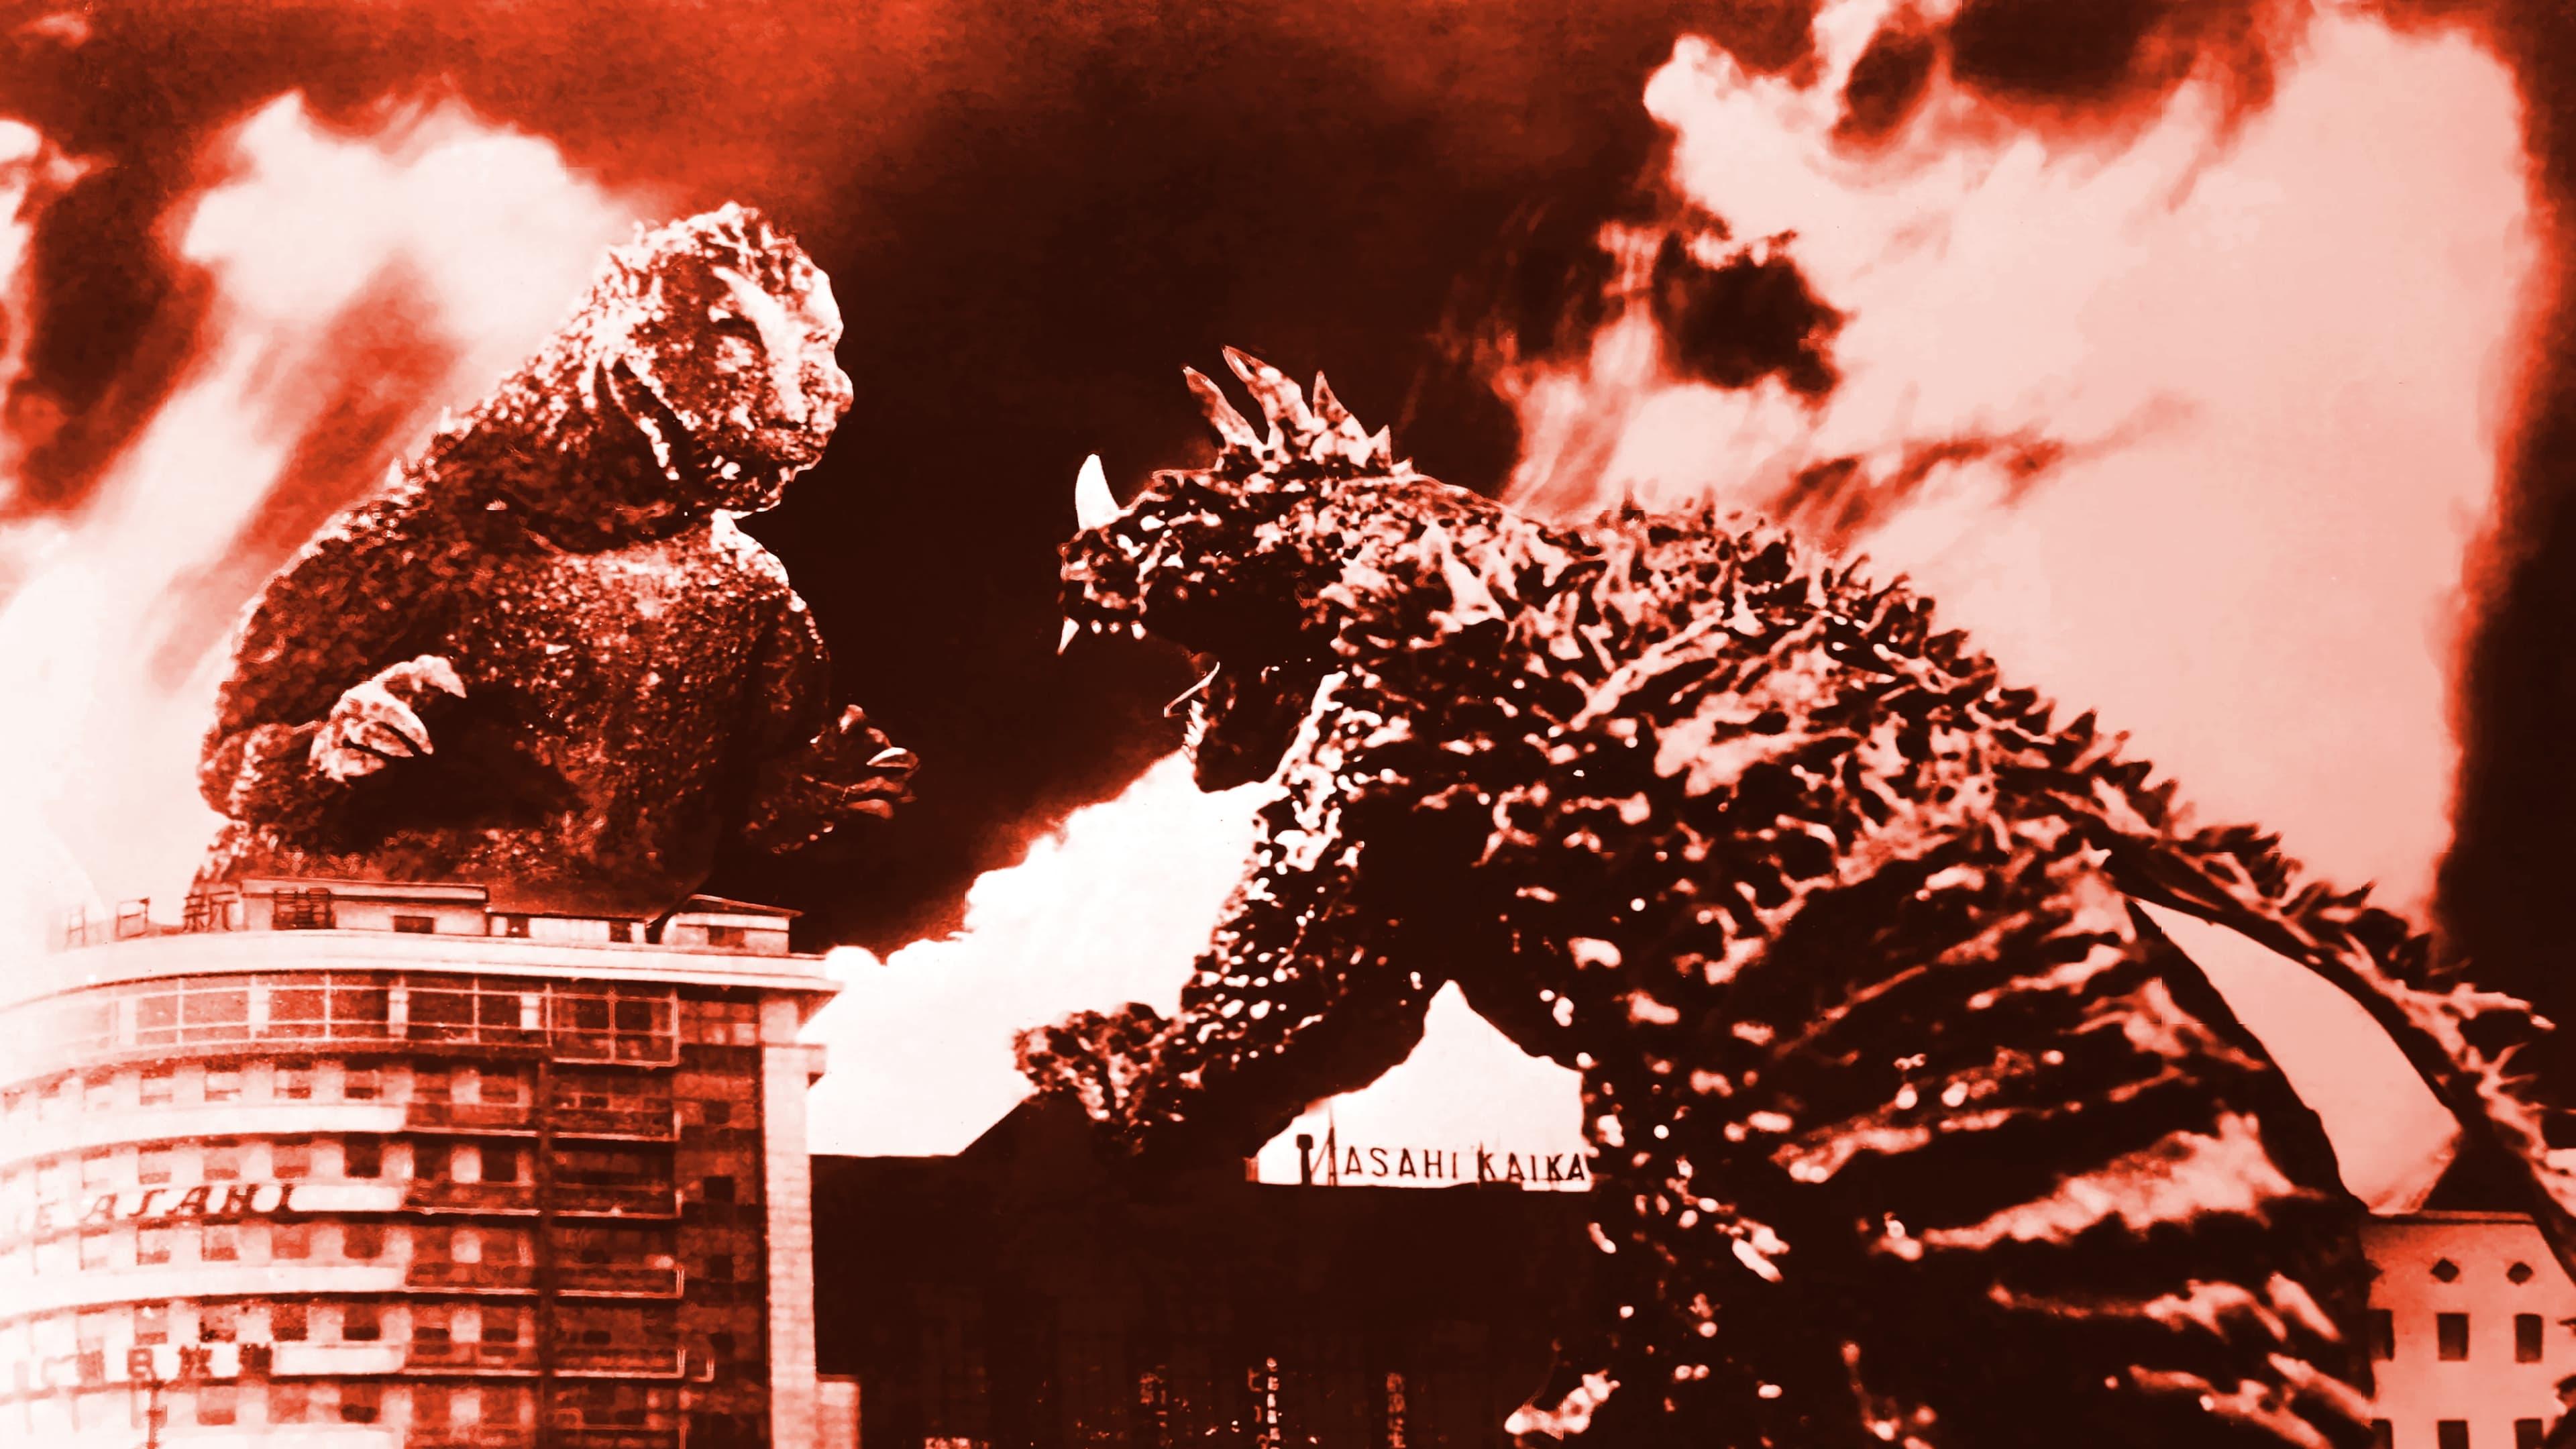 Gigantis, the Fire Monster backdrop